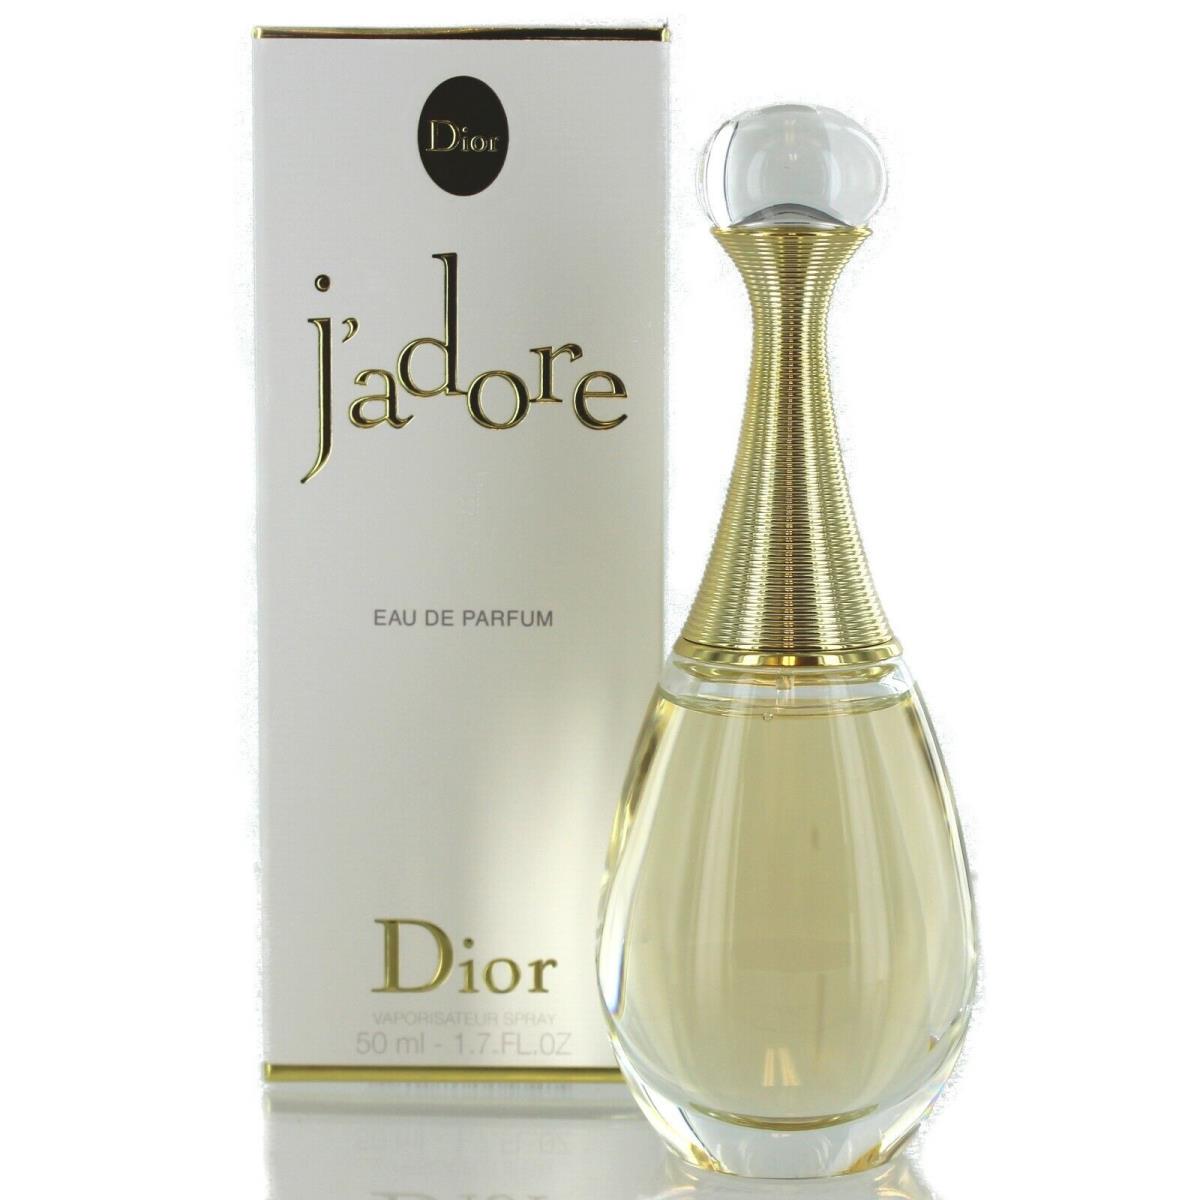 Jadore For Women by Christian Dior Eau De Parfum Spray 1.7 Oz